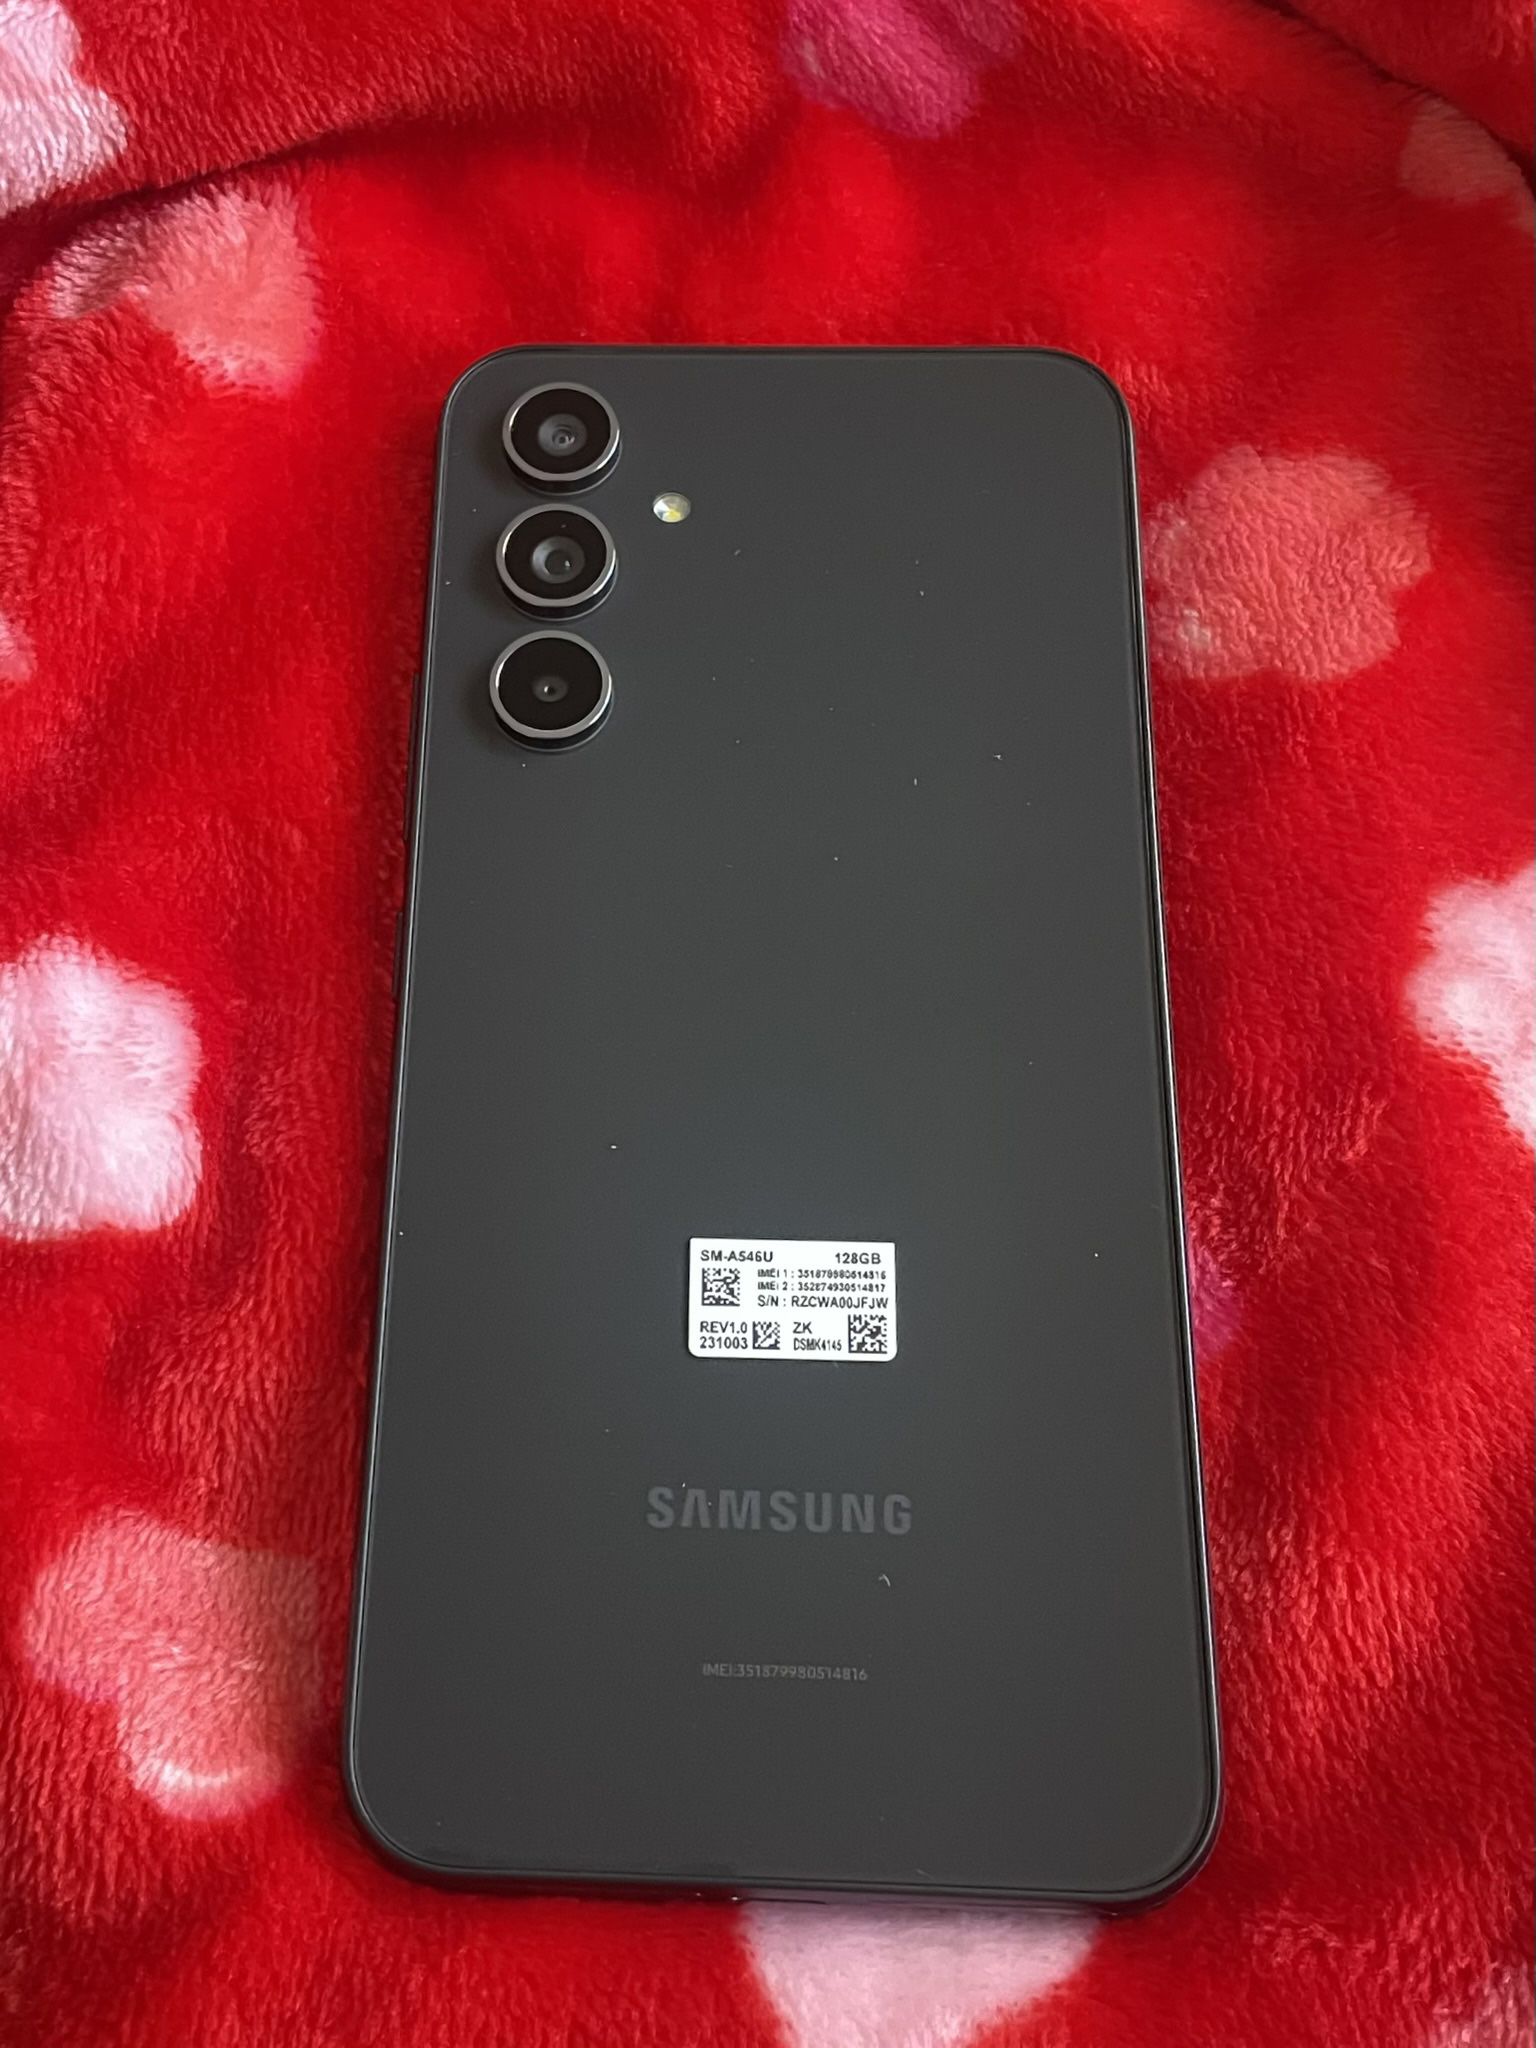 Samsung Galaxy A54 